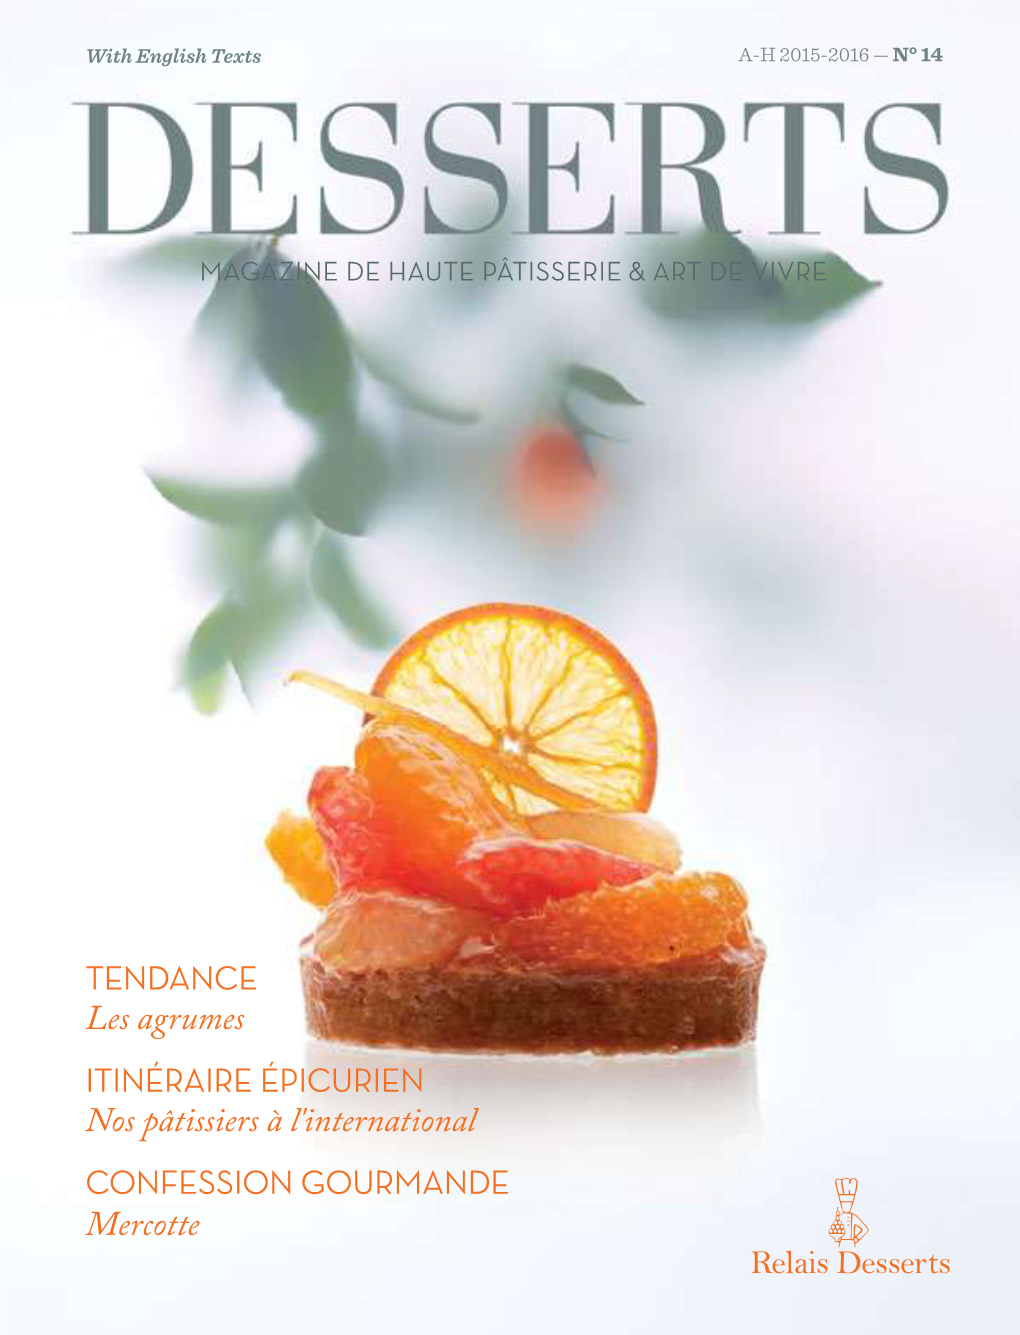 Relais Desserts Will Be Most Salon Du Chocolat À Paris, Où Relais Desserts Sera Ravi De Vous Happy to Meet You